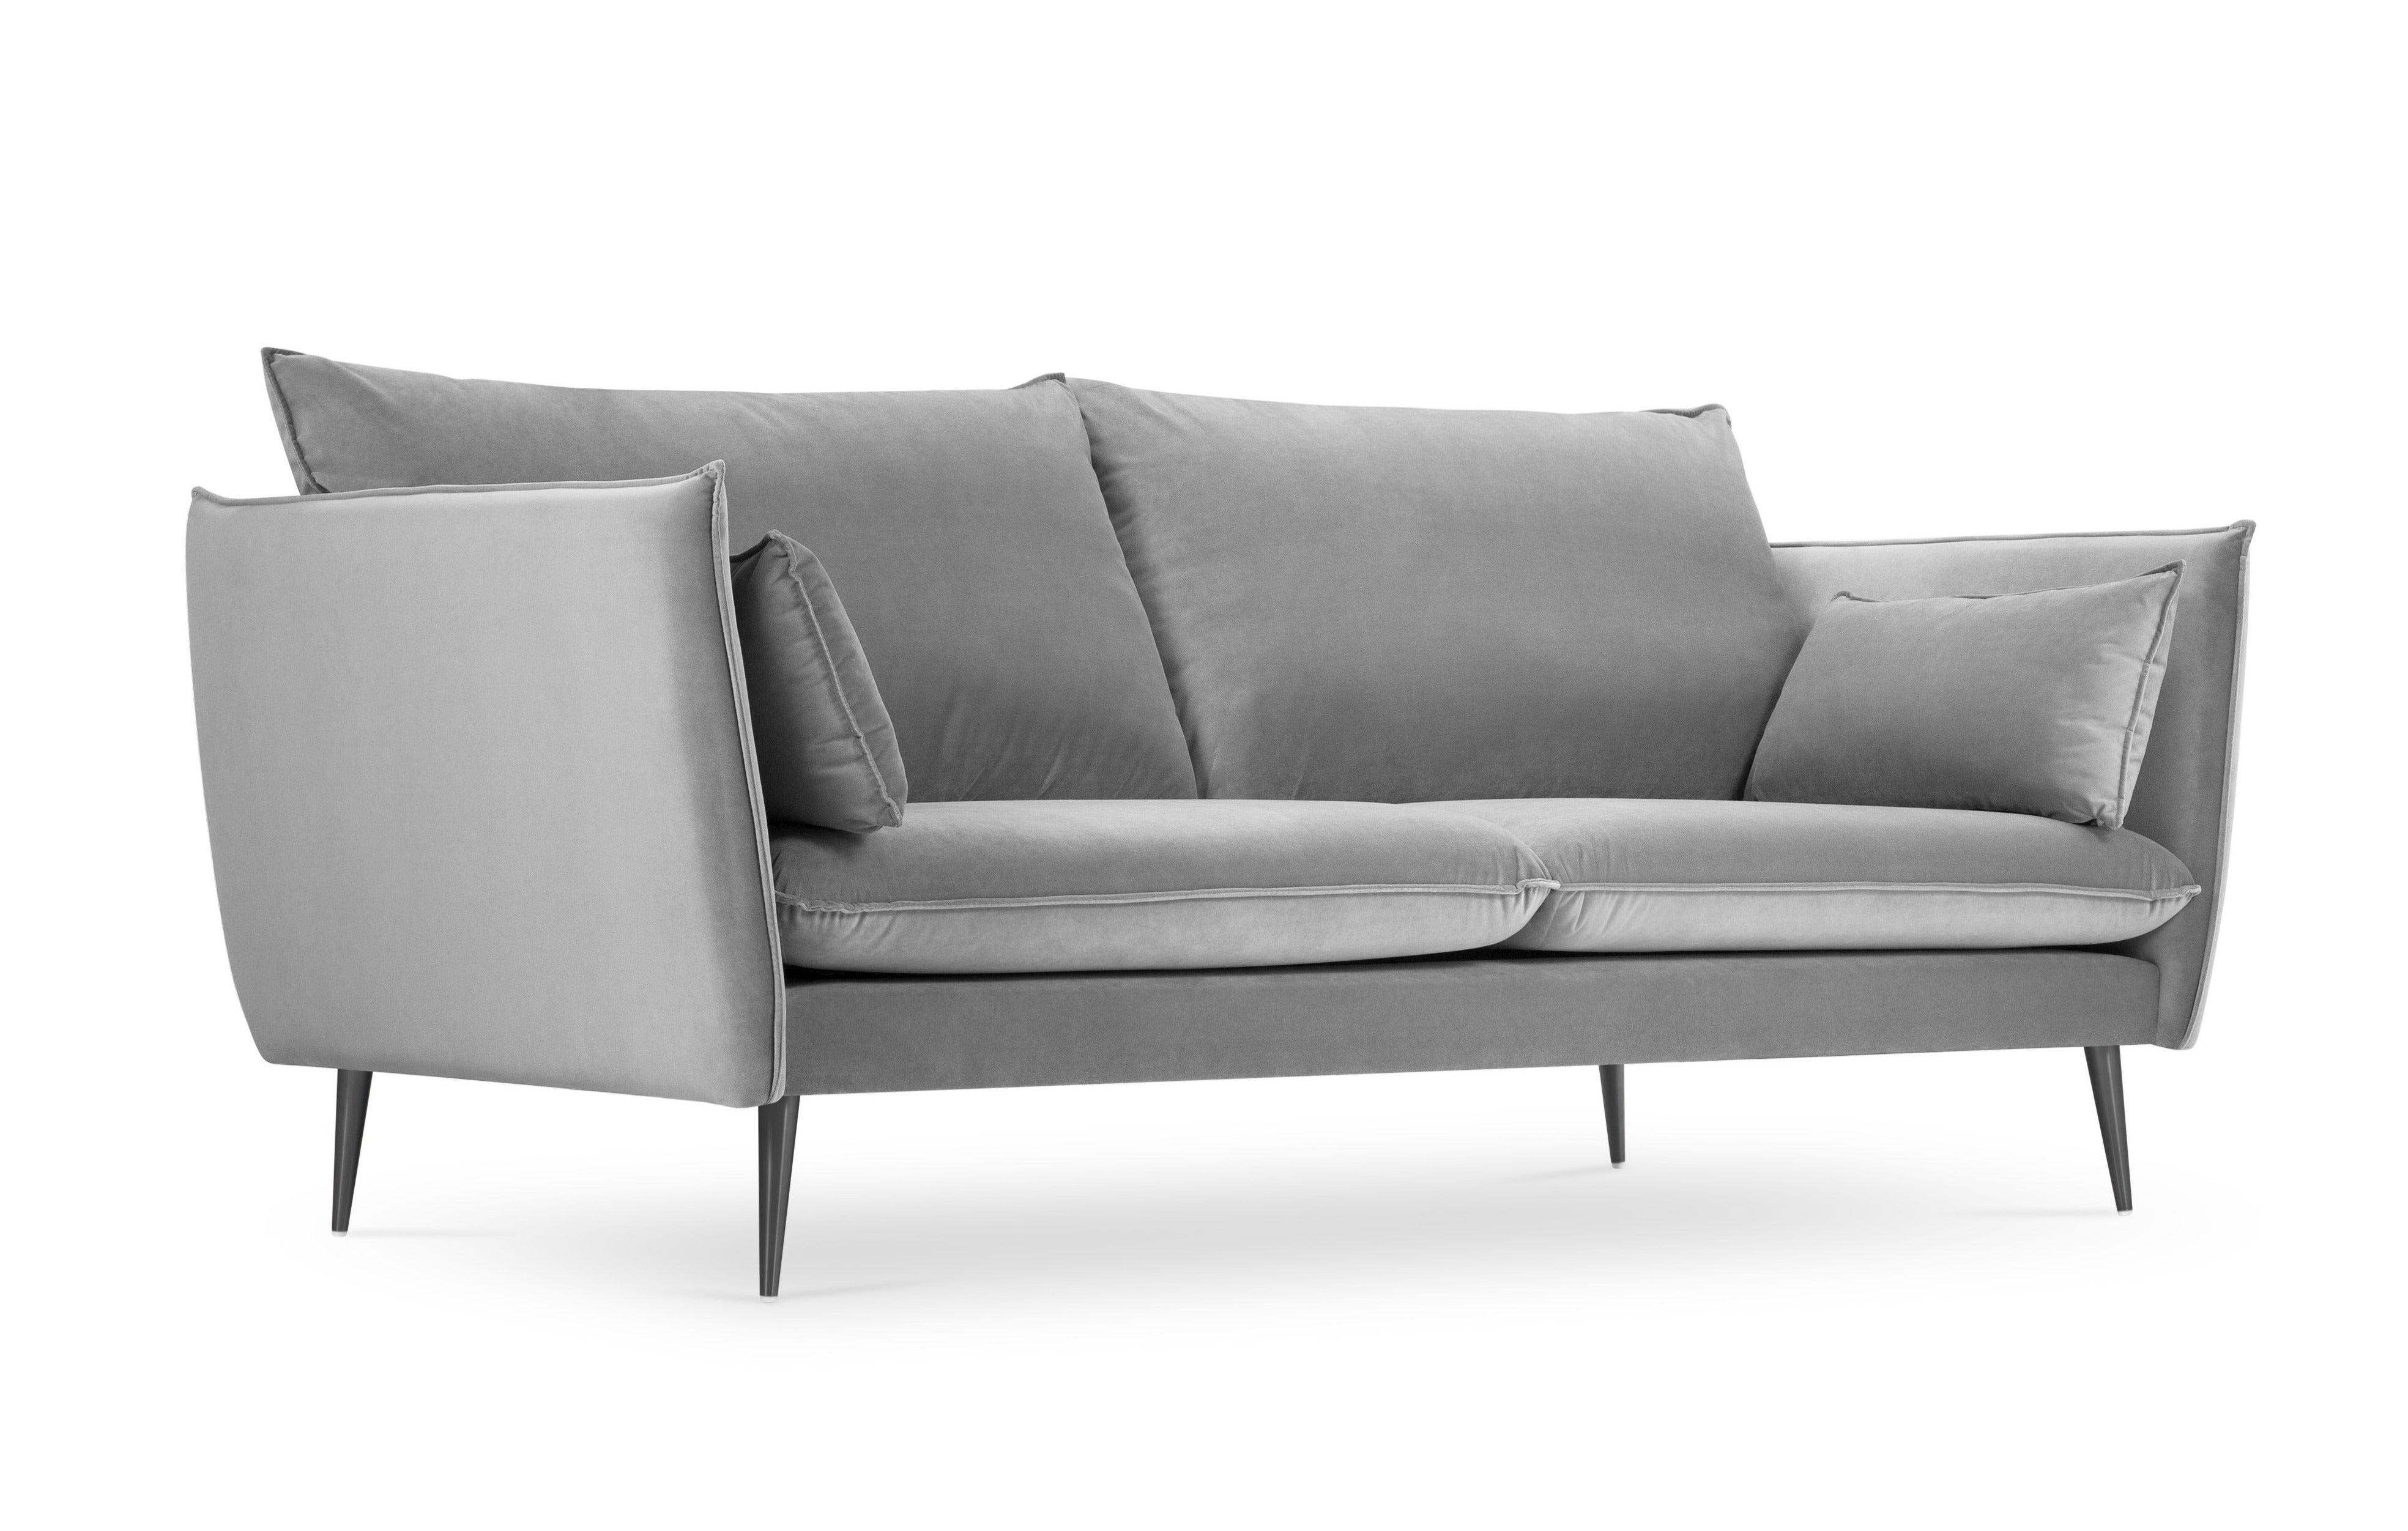 4-person sofa light gray